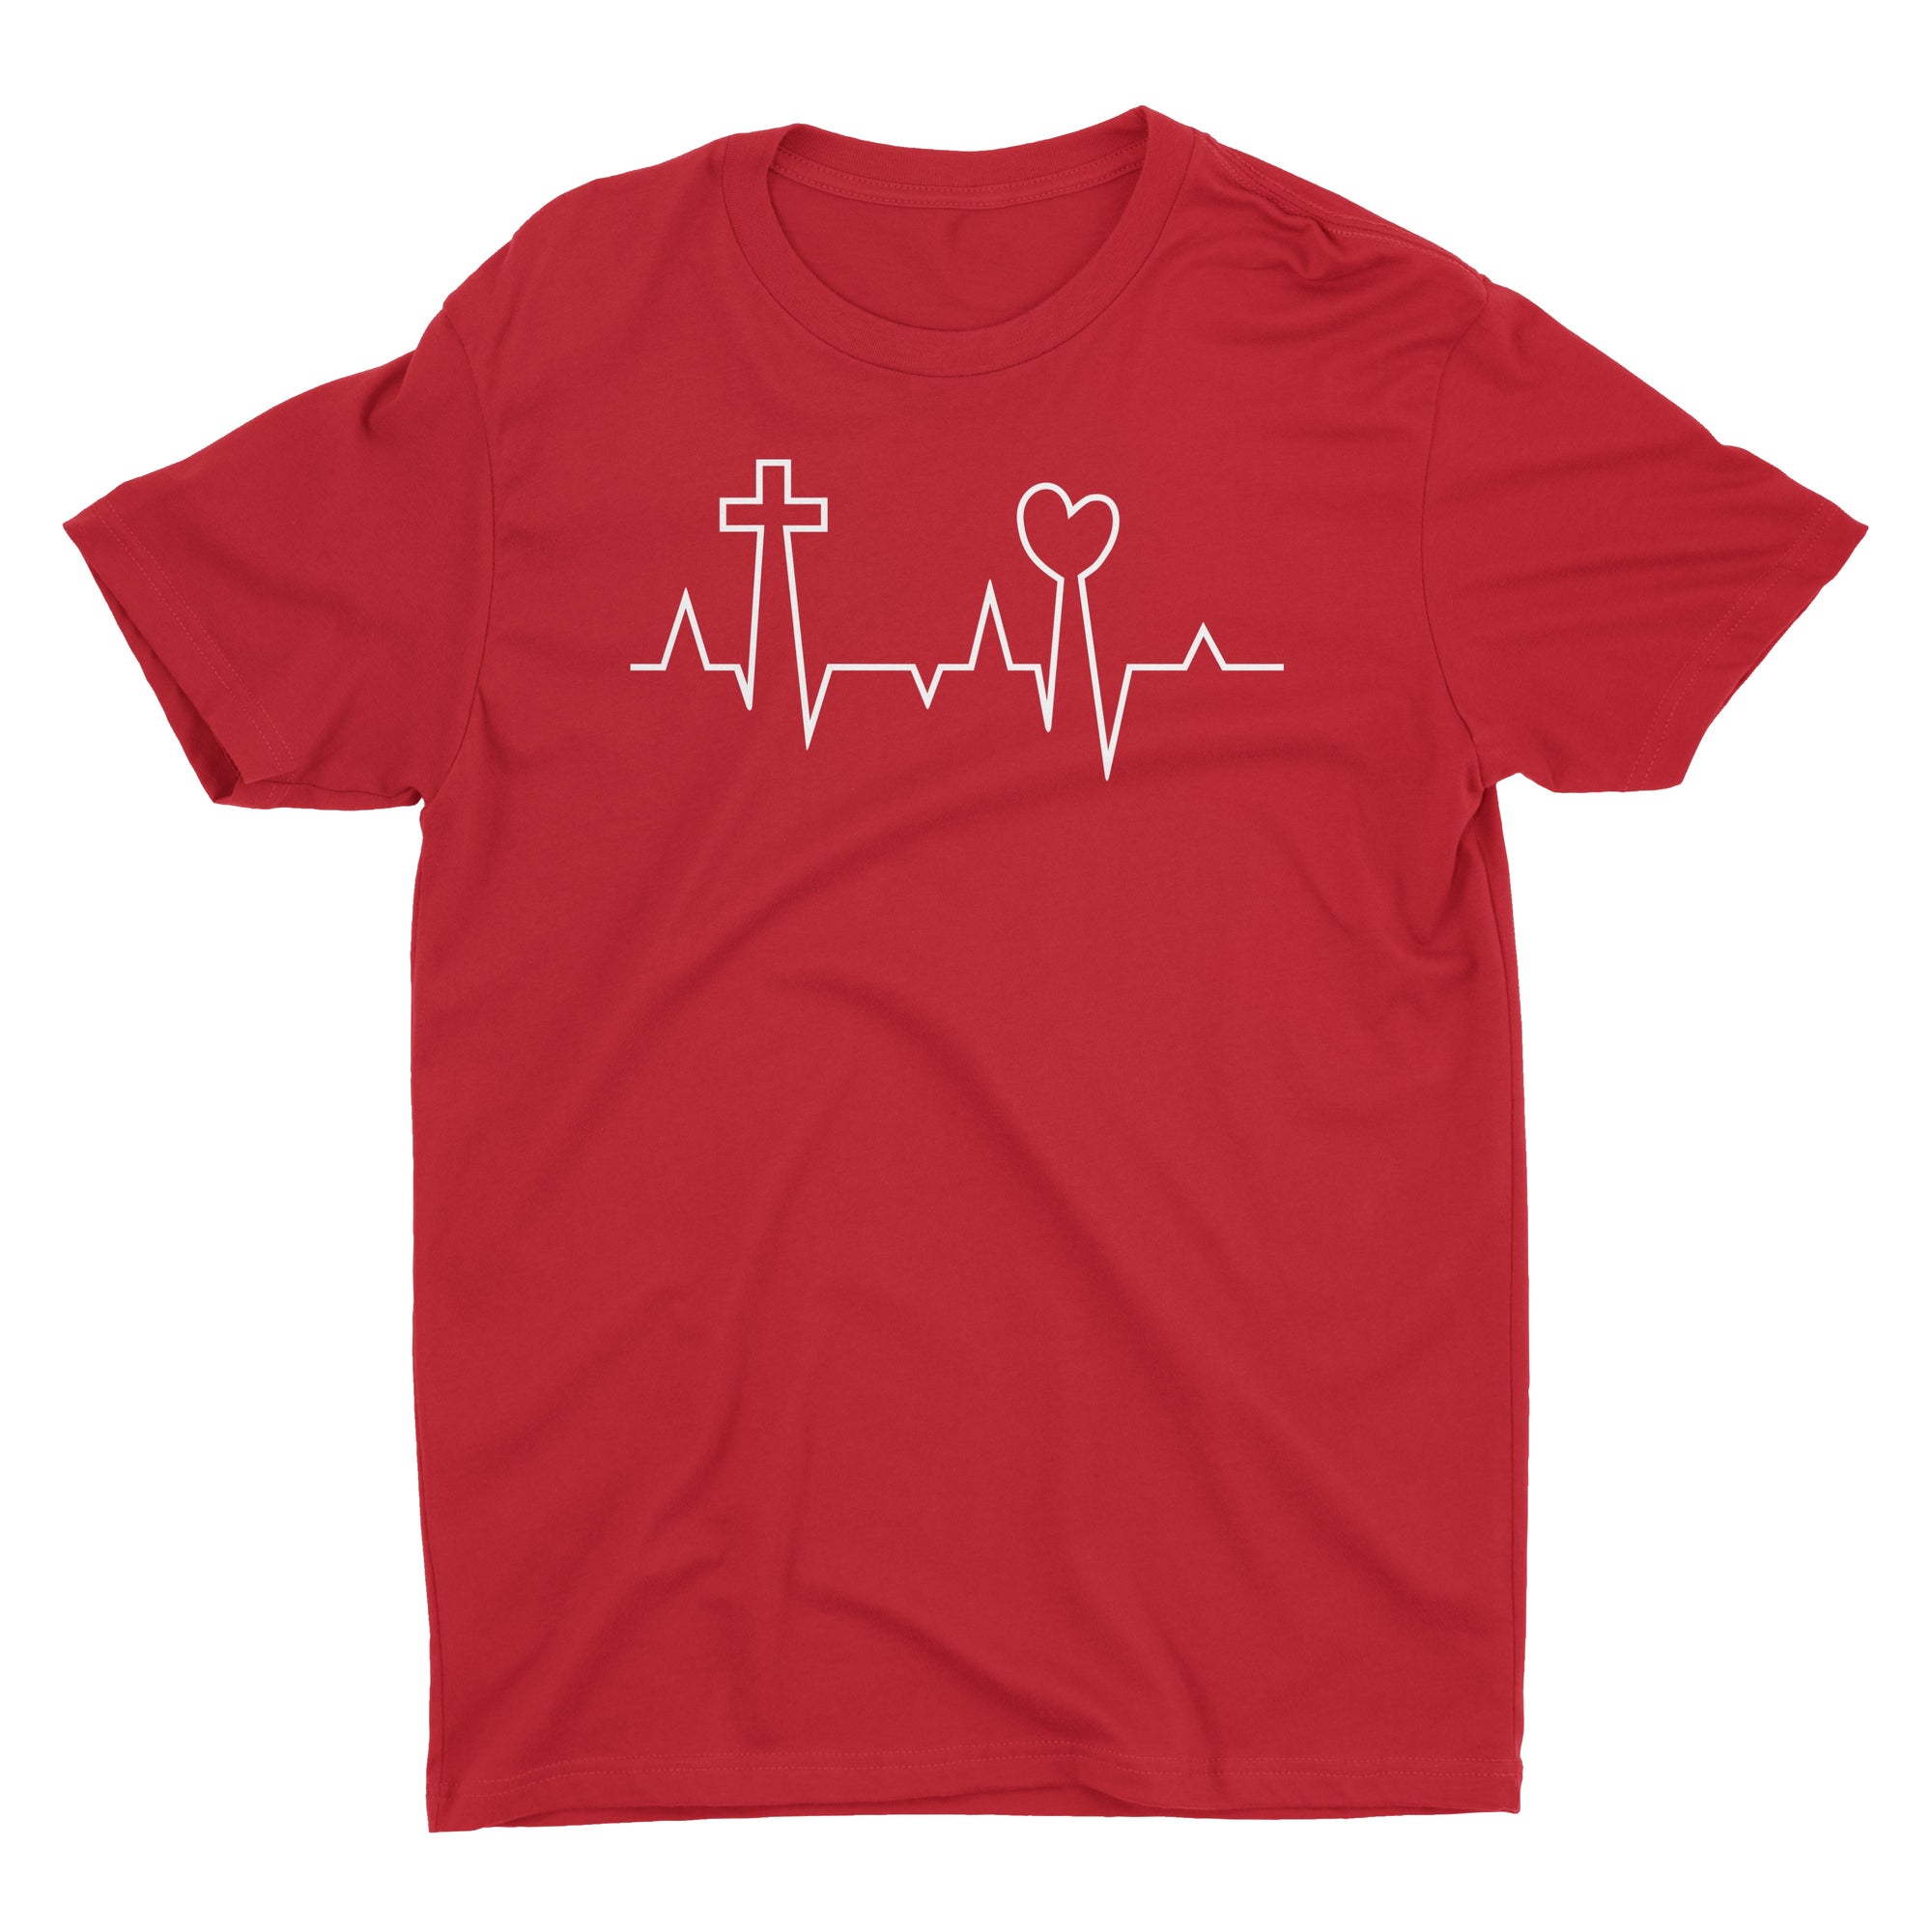 EKG Life Line Pulse Love Heart Cross Jesus Easter Valentine's Day Christian Tshirt for Men